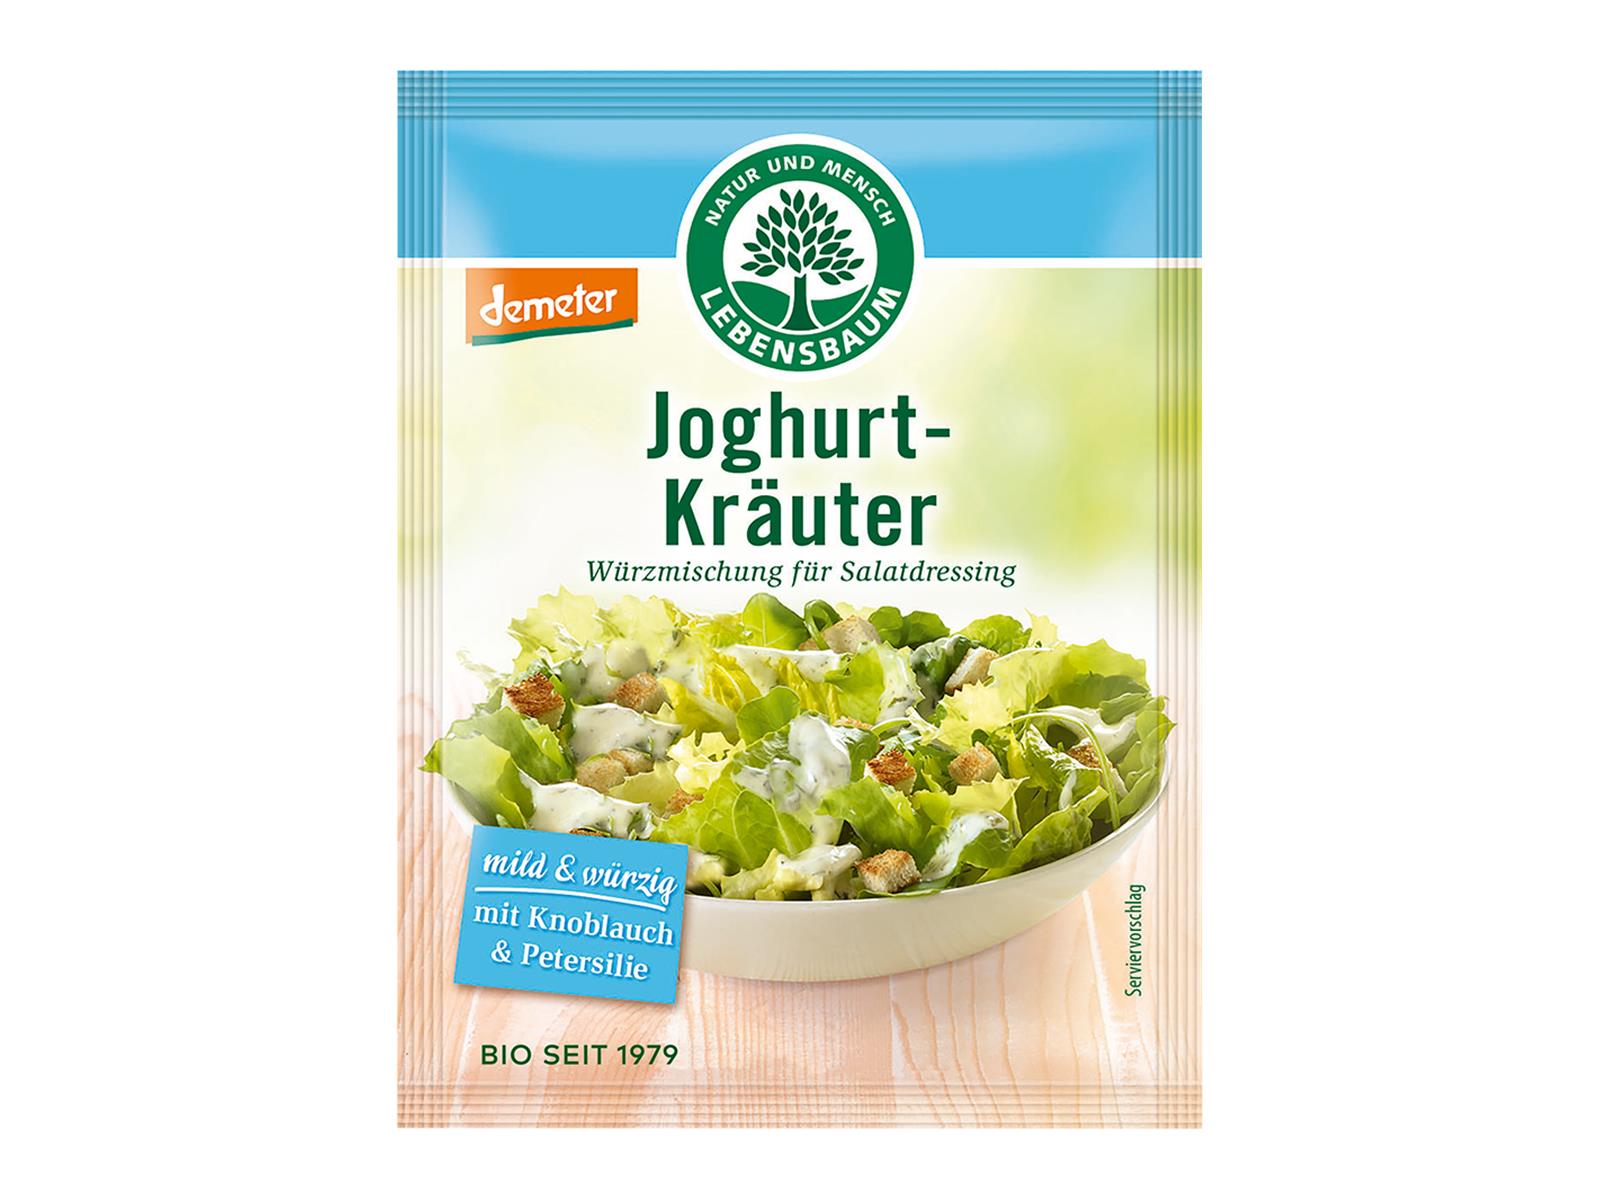 Lebensbaum Salatdressing Joghurt Kräuter 3 Btl. 15g